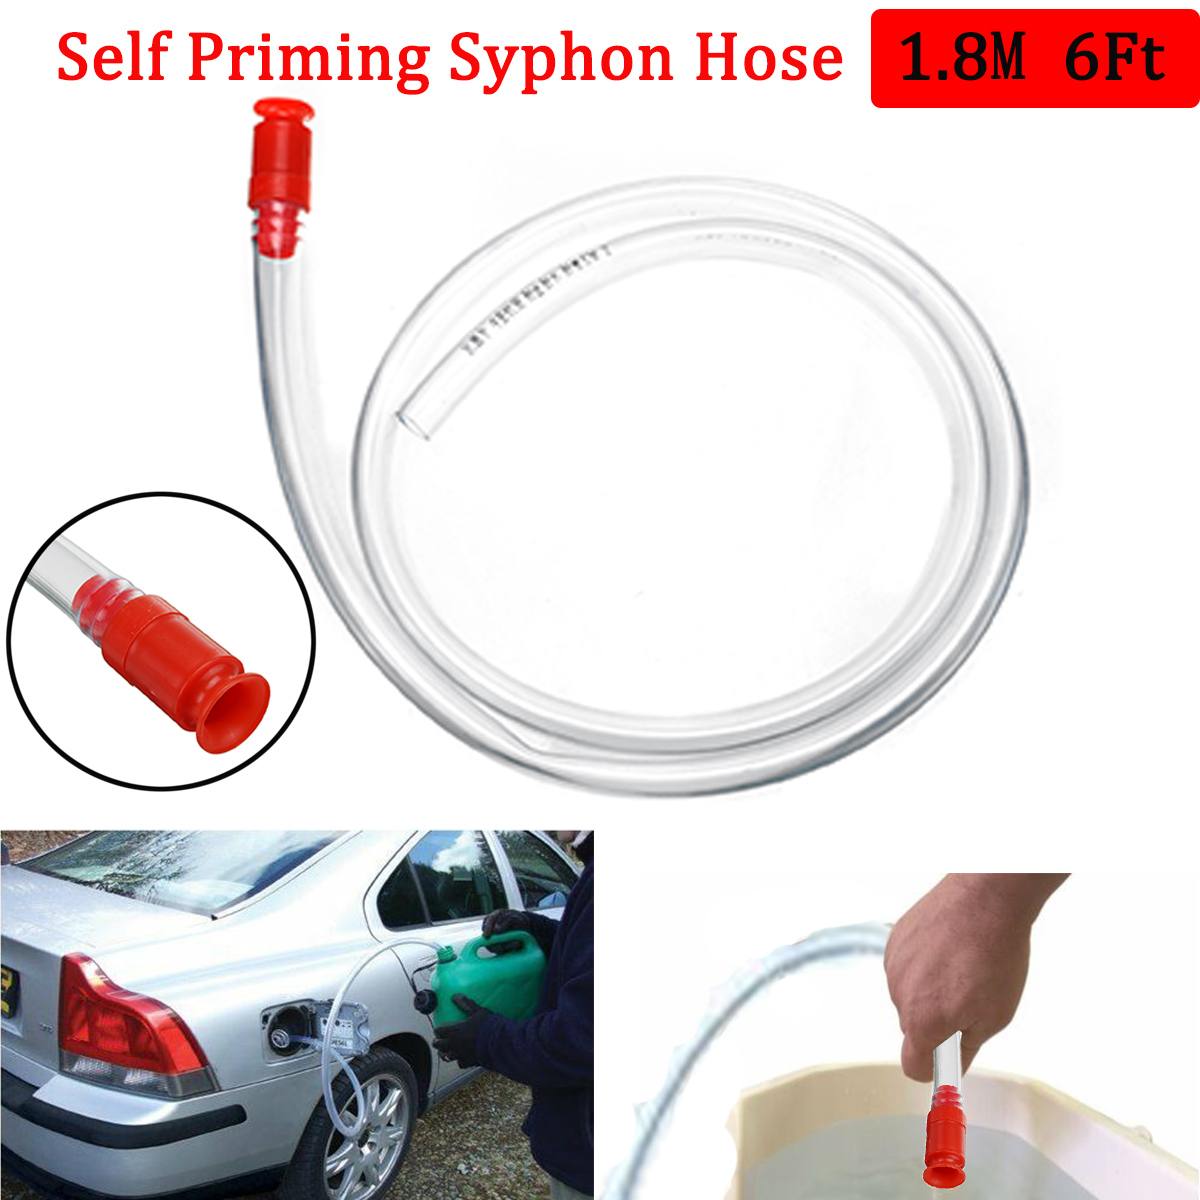 Syphon Water Gasoline Hose 6Ft Car Fuel Gas Self Priming PVC Safety Pump Gasoline Fuel Water Shaker Siphon Self Priming Hose